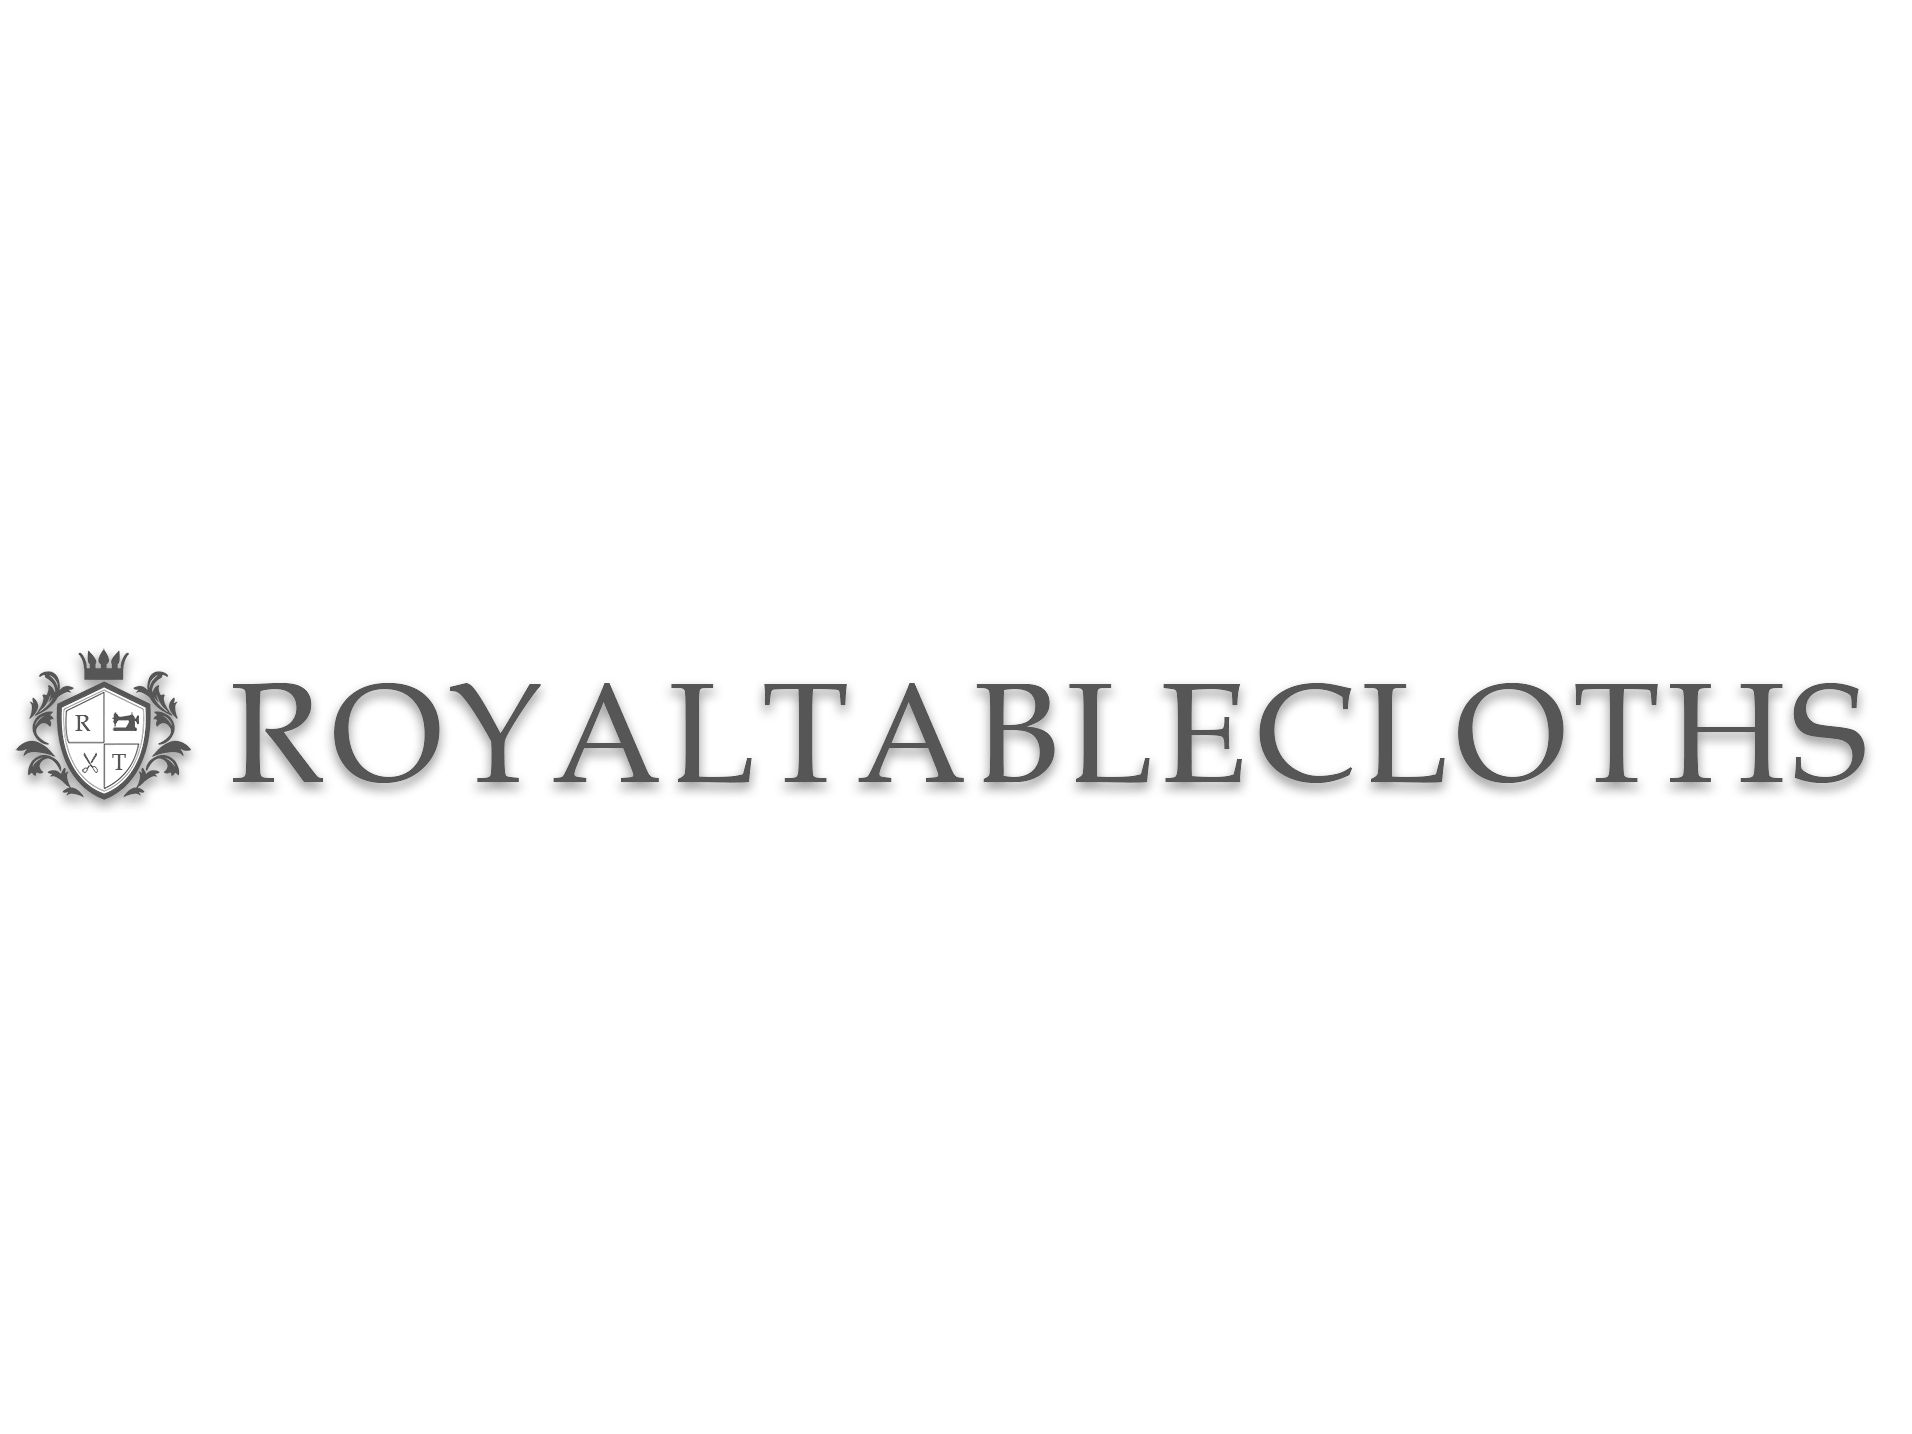 Royal Tablecloths brand logo